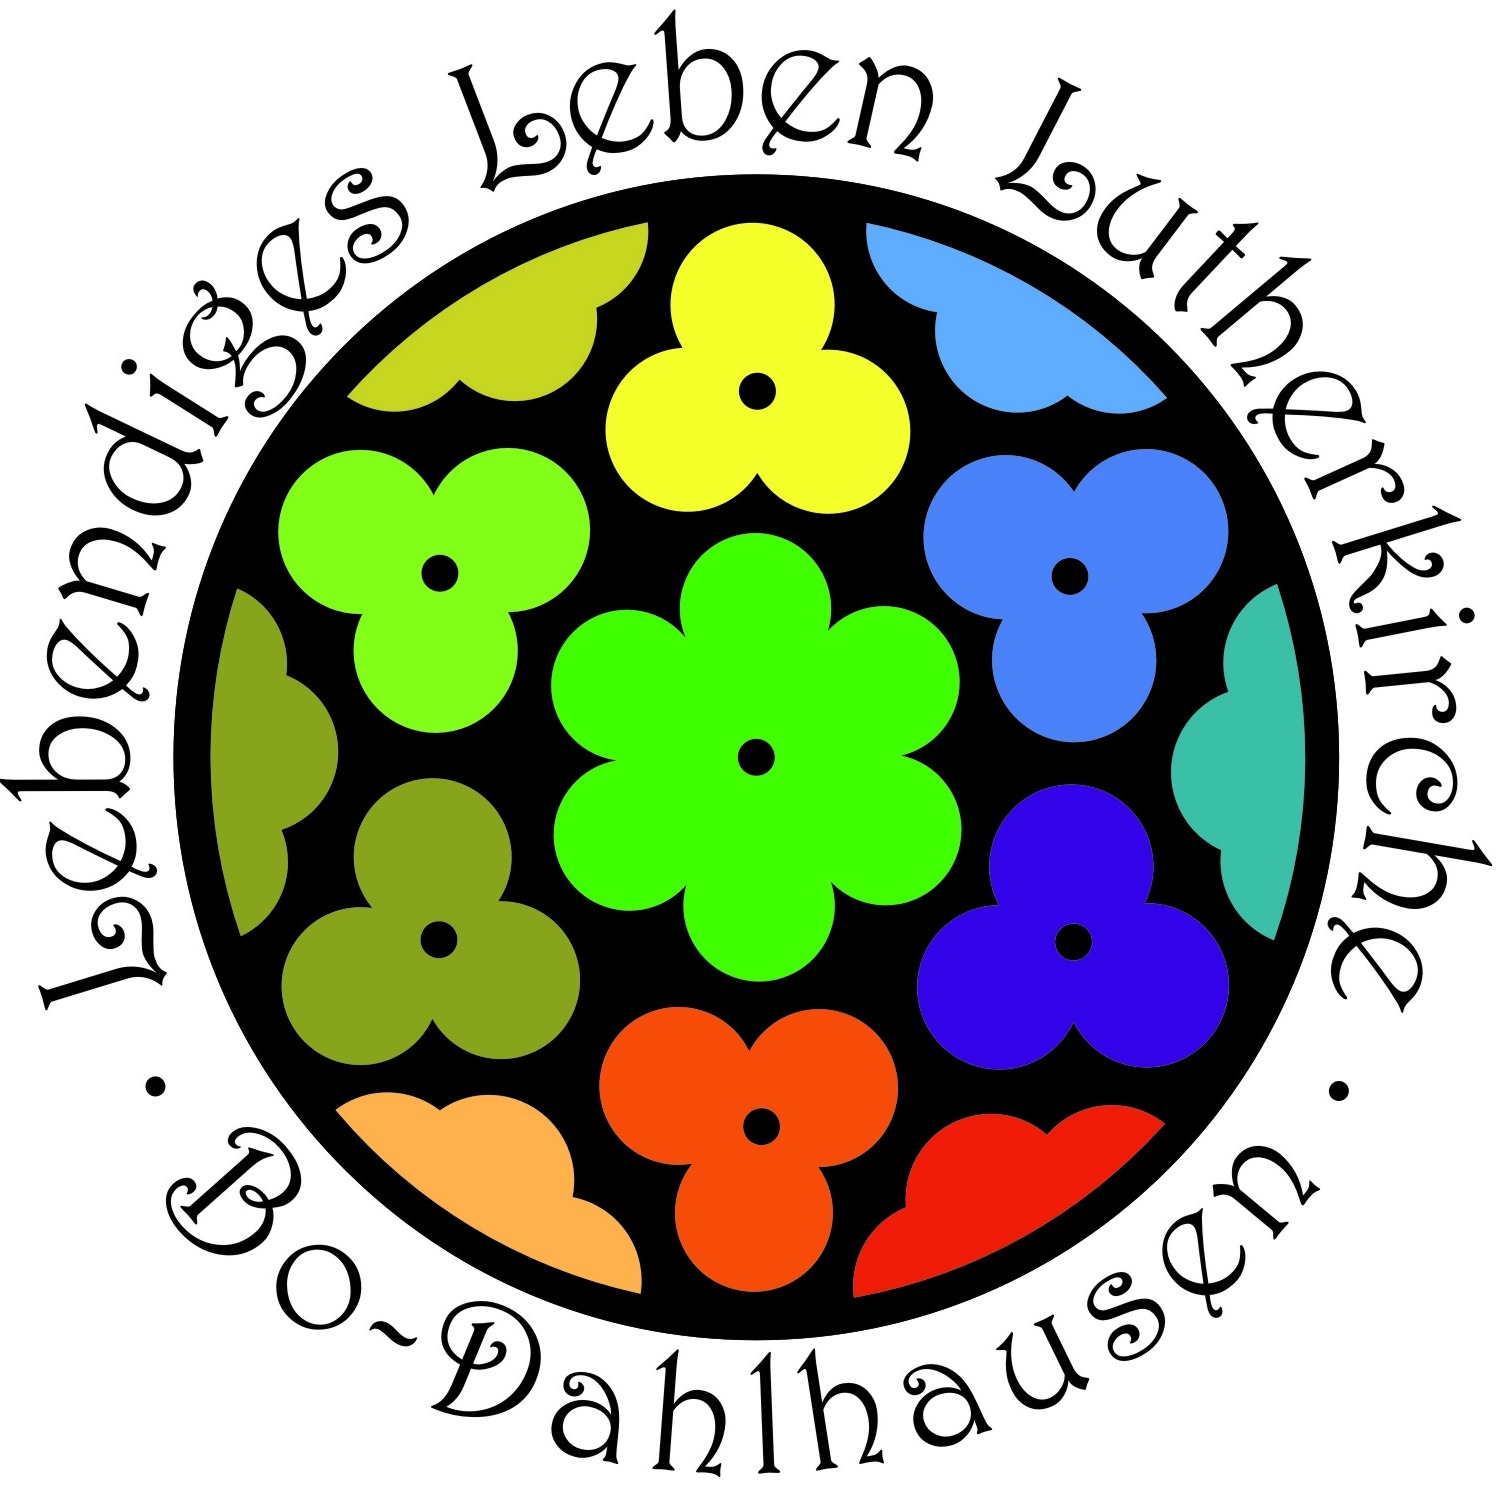 Lutherkirche - Evangelische Kirchengemeinde Dahlhausen Logo